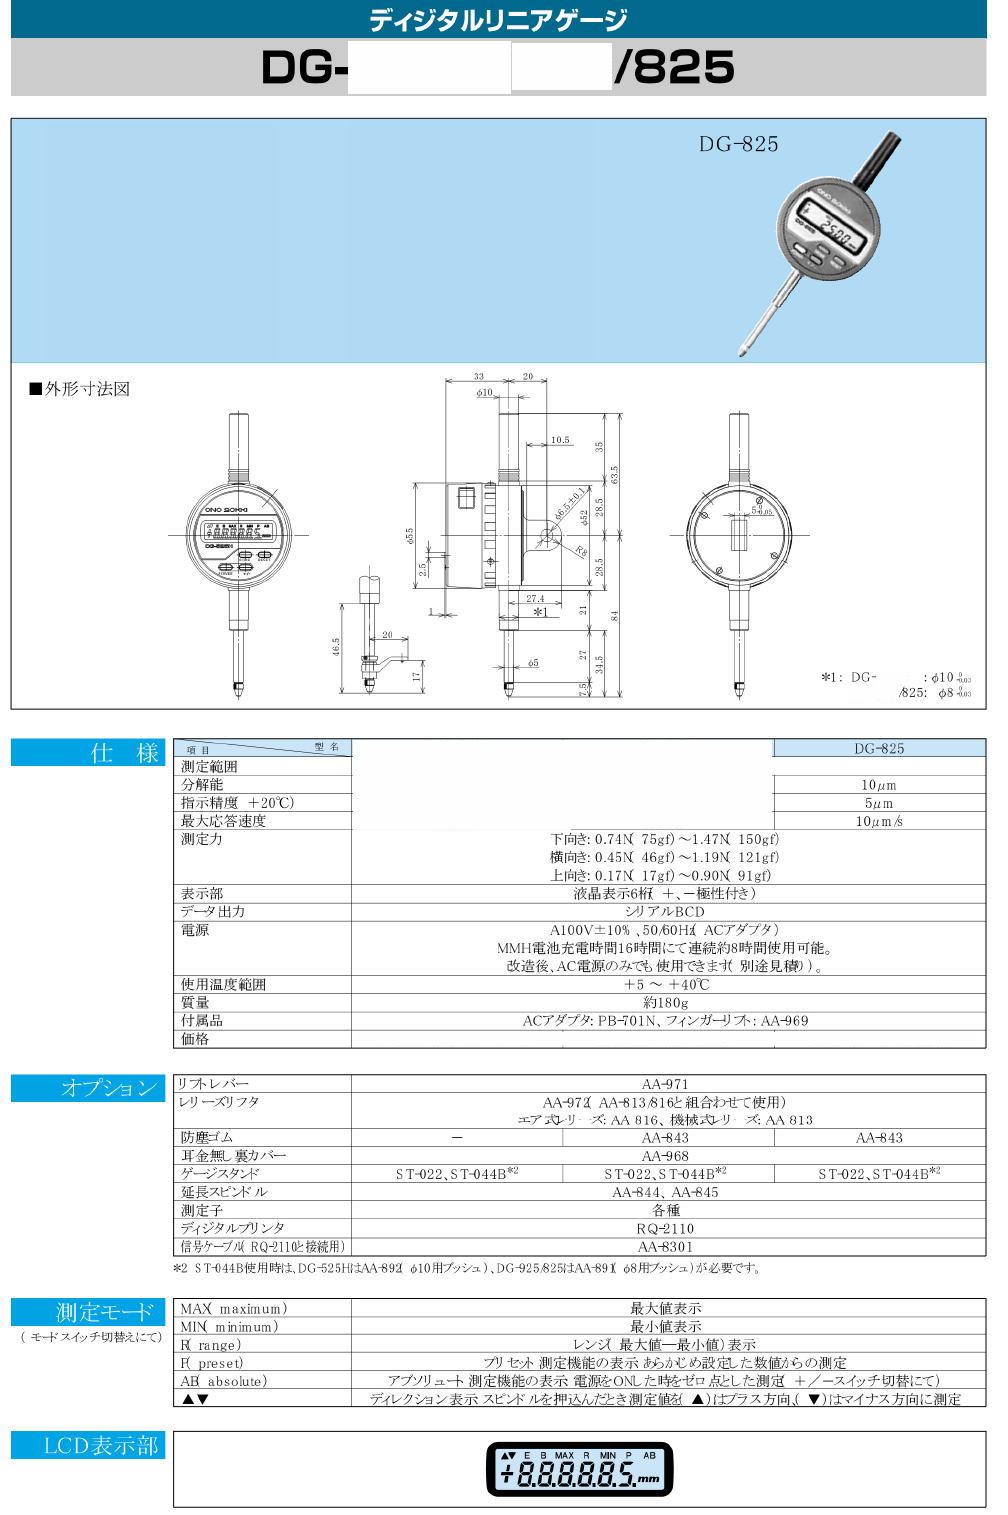 株式会社小野測器 デジタルリニアゲージ DG-525H / DG-925 / DG-825